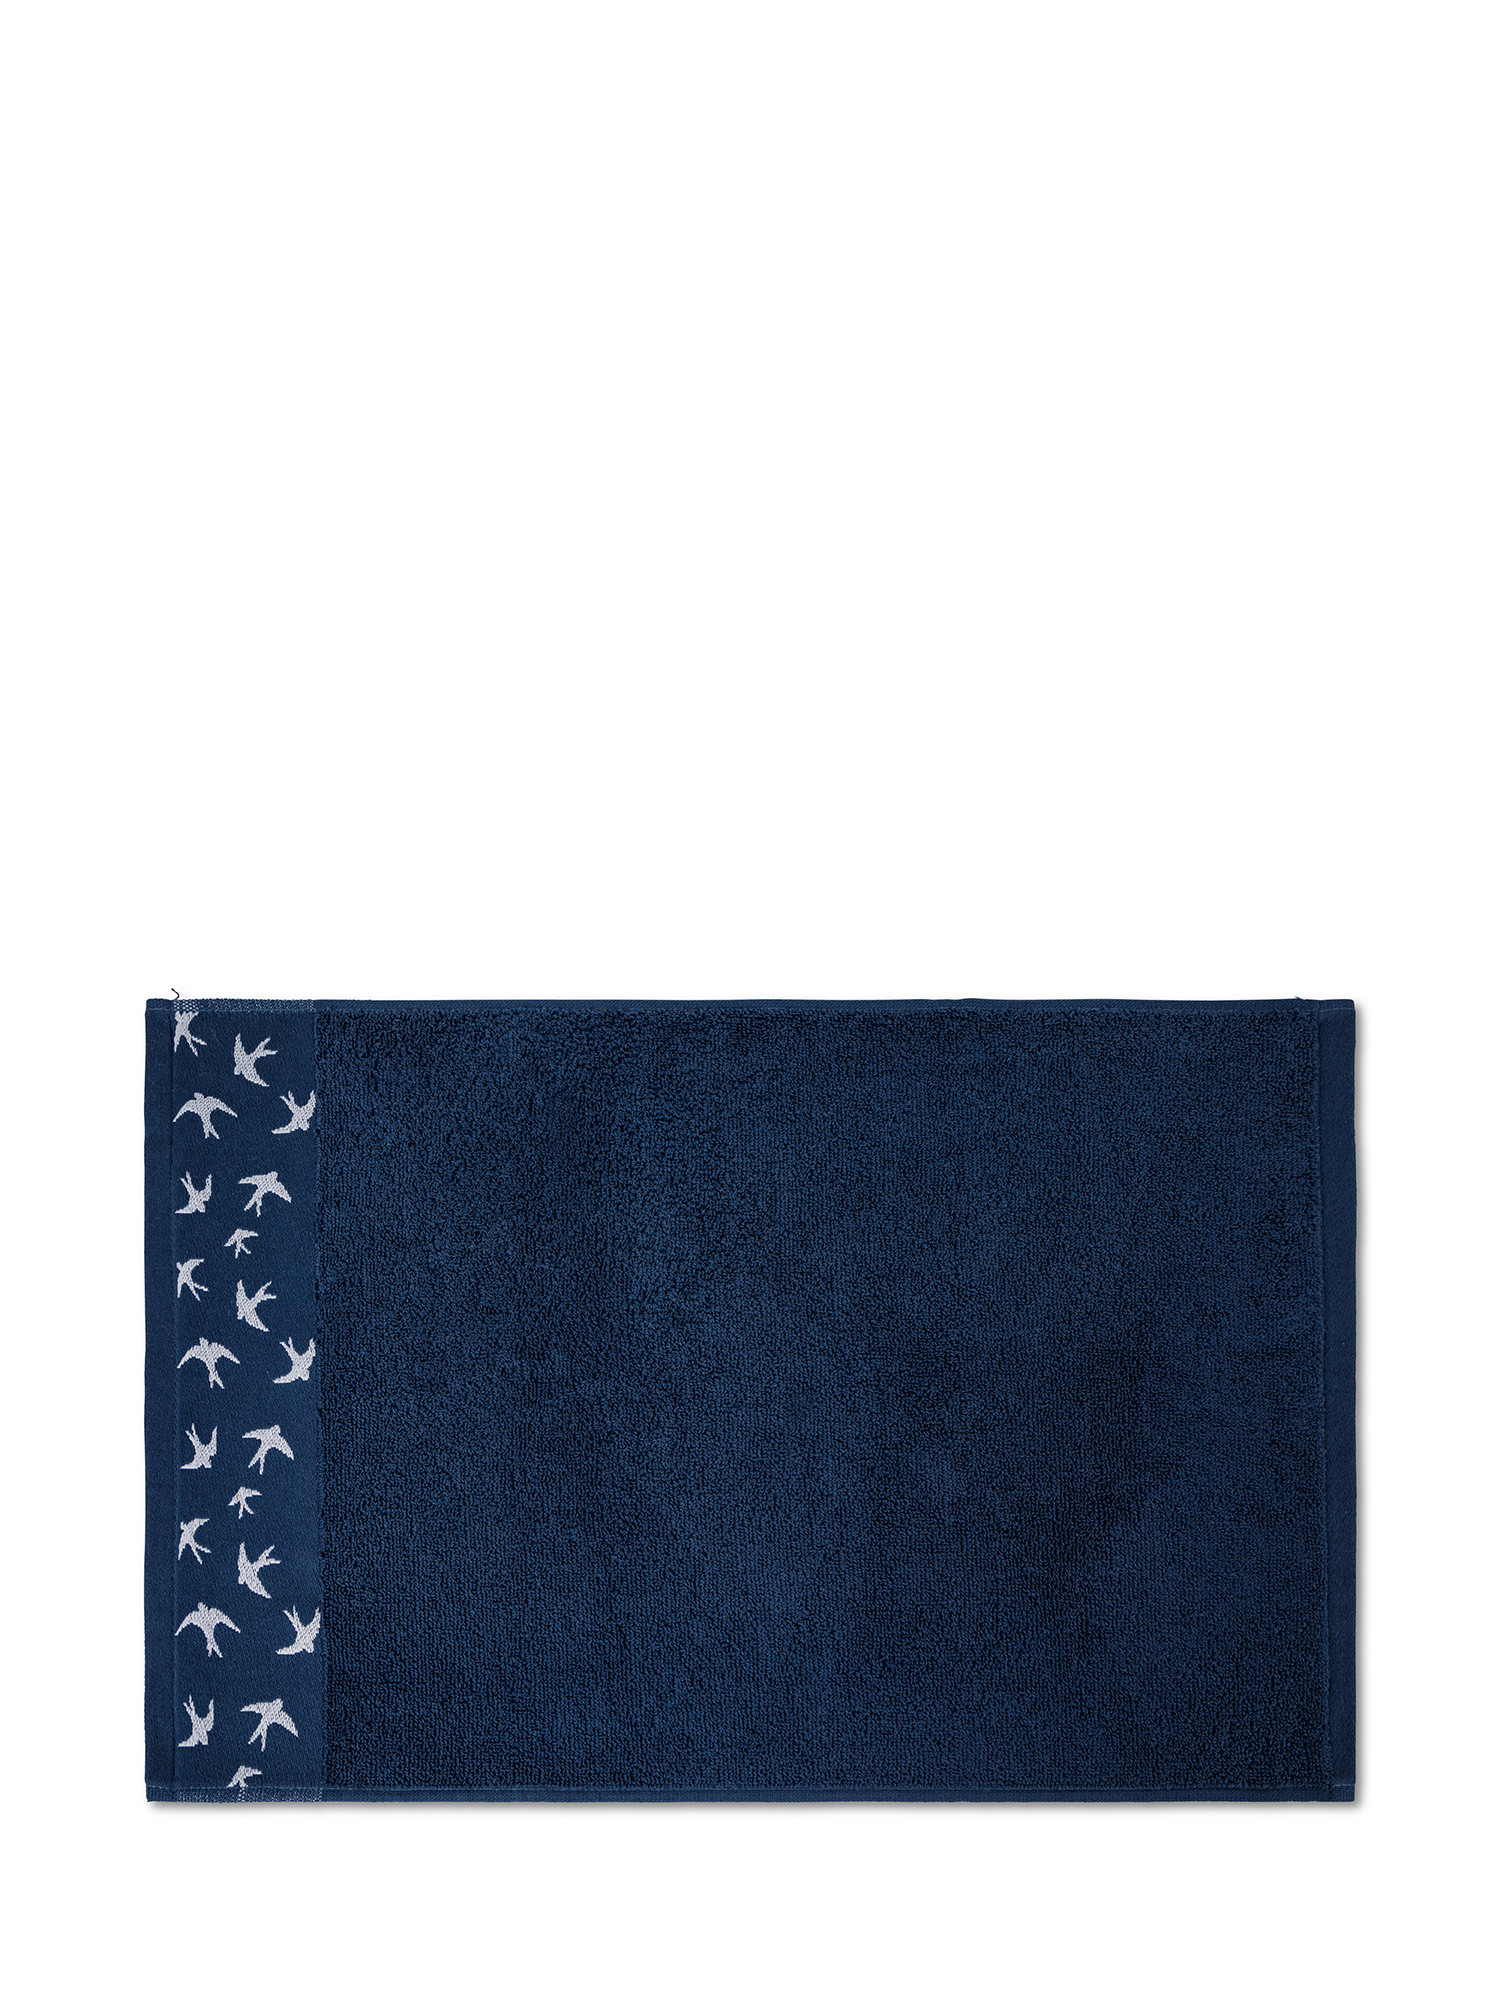 Asciugamano in spugna di puro cotone con ricamo rondini, Blu, large image number 1